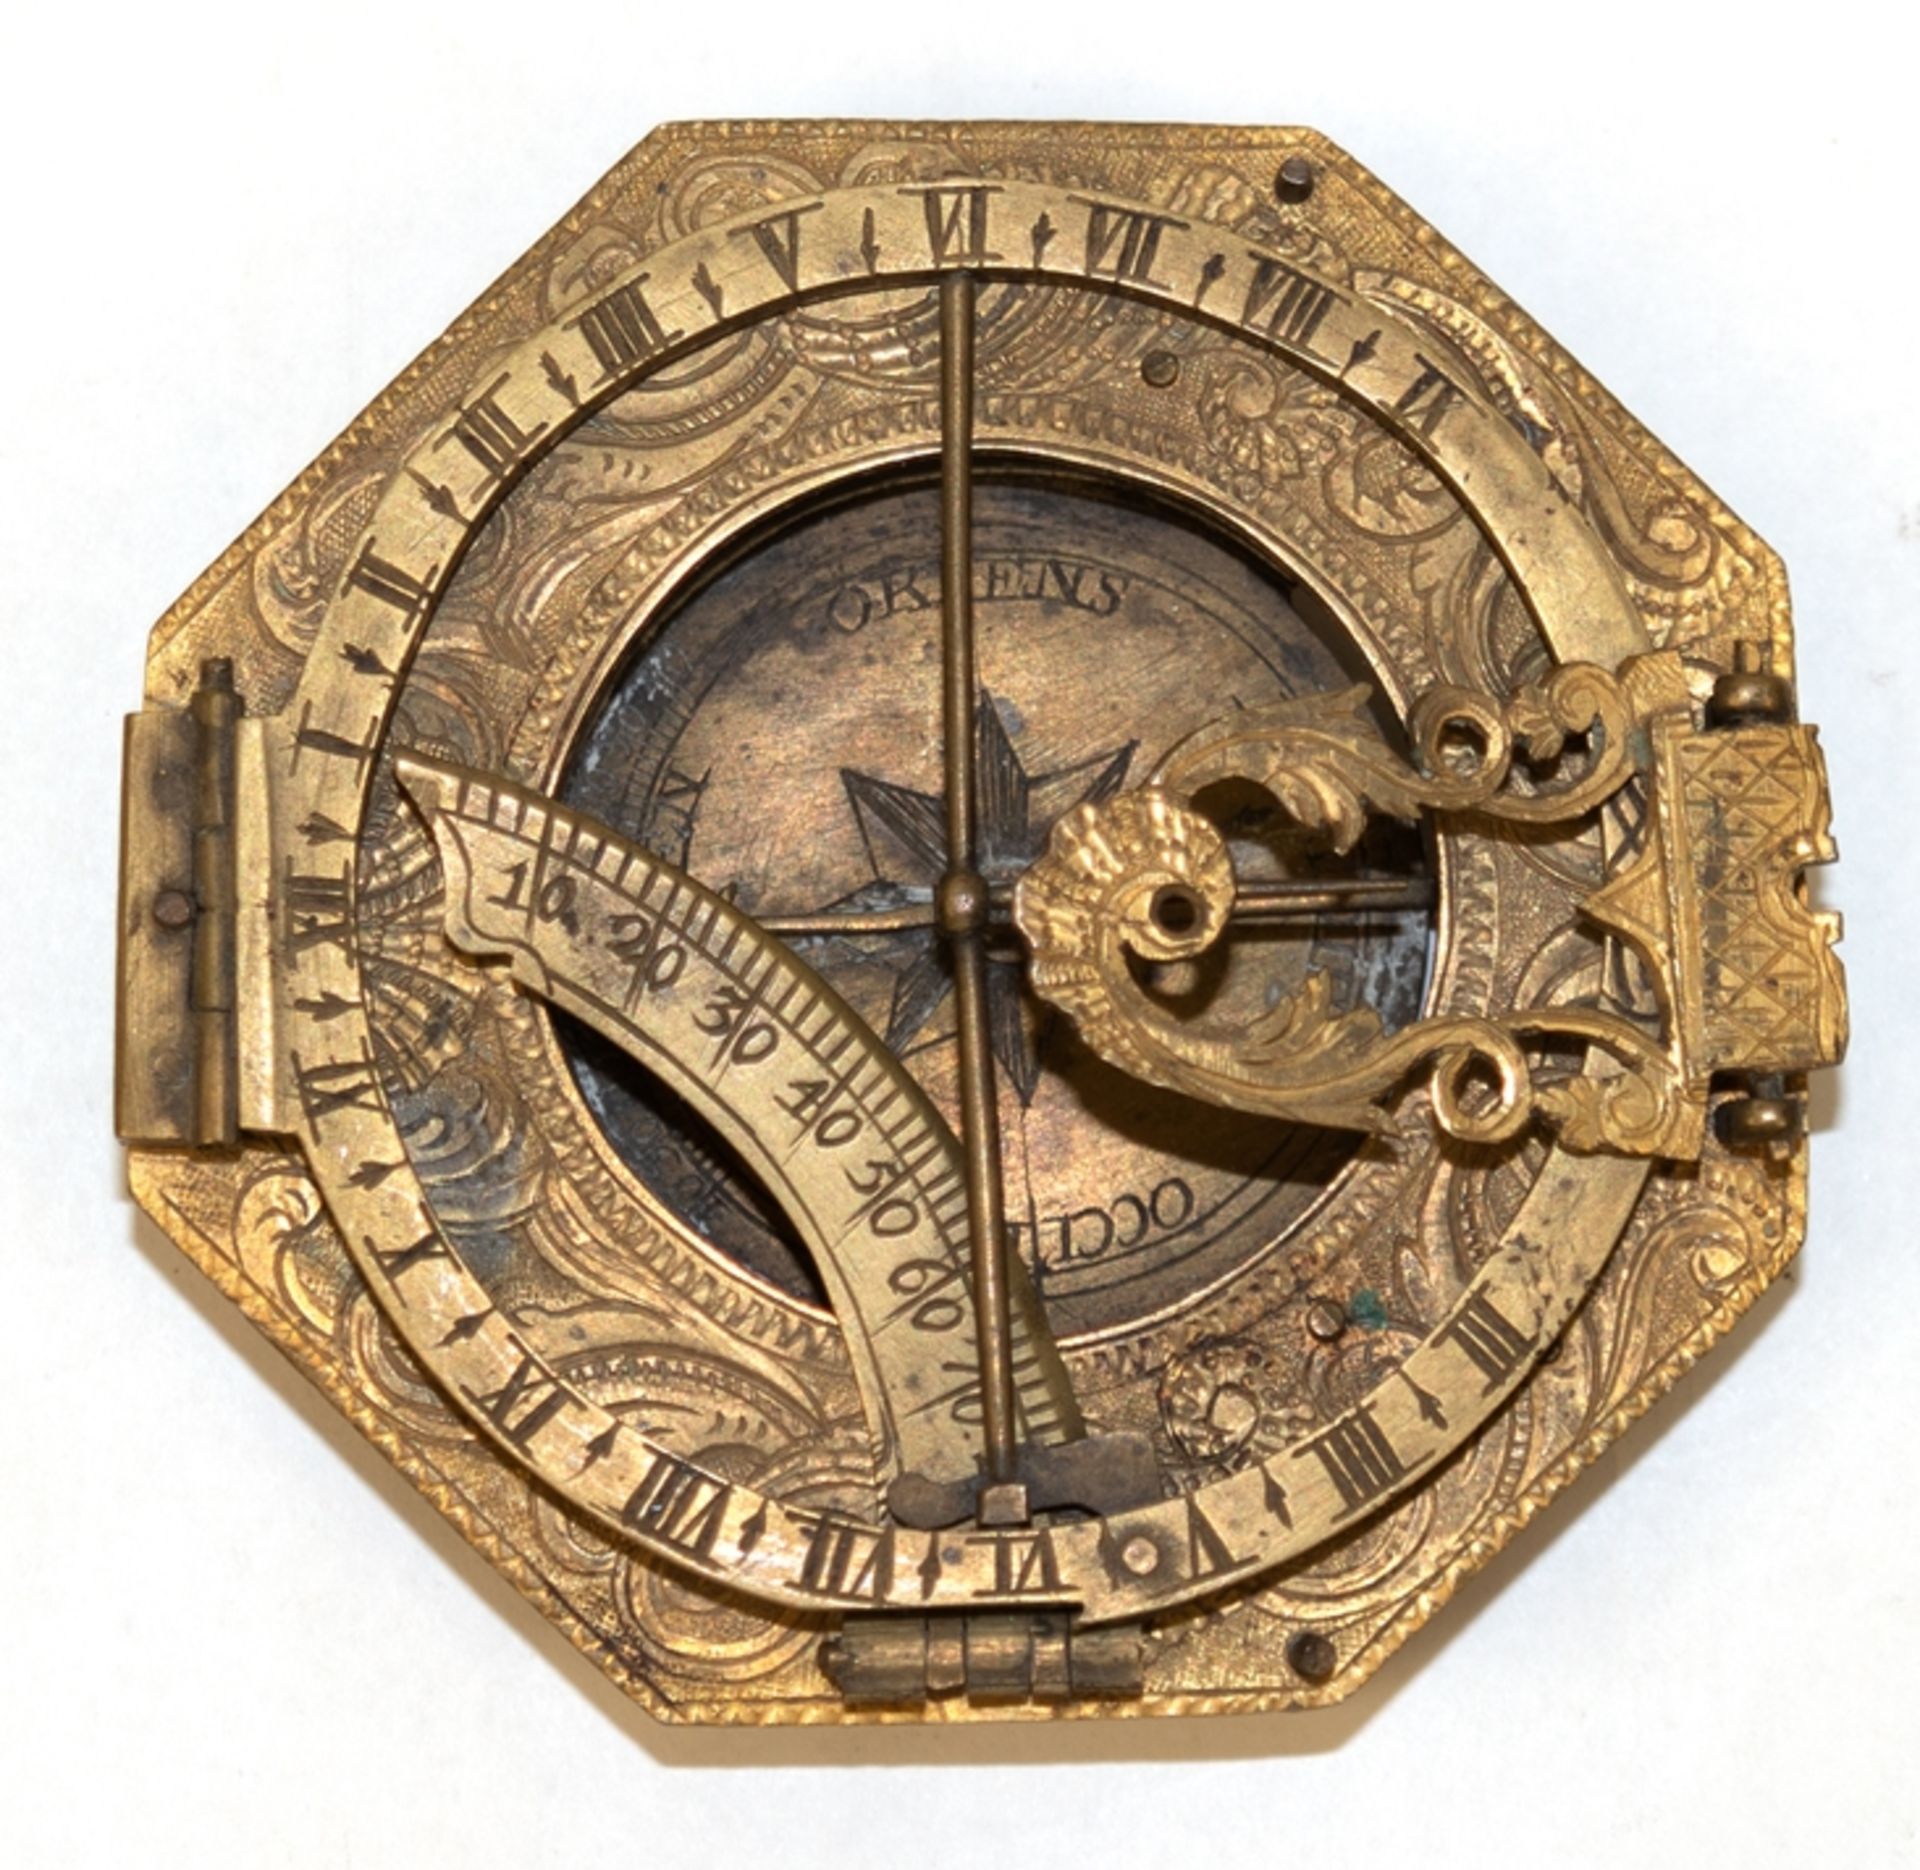 Barock-Taschensonnenuhr, klappbar, Messing, achteckig, fein ziseliert, mittig Kompass (Nadel festst - Image 2 of 2